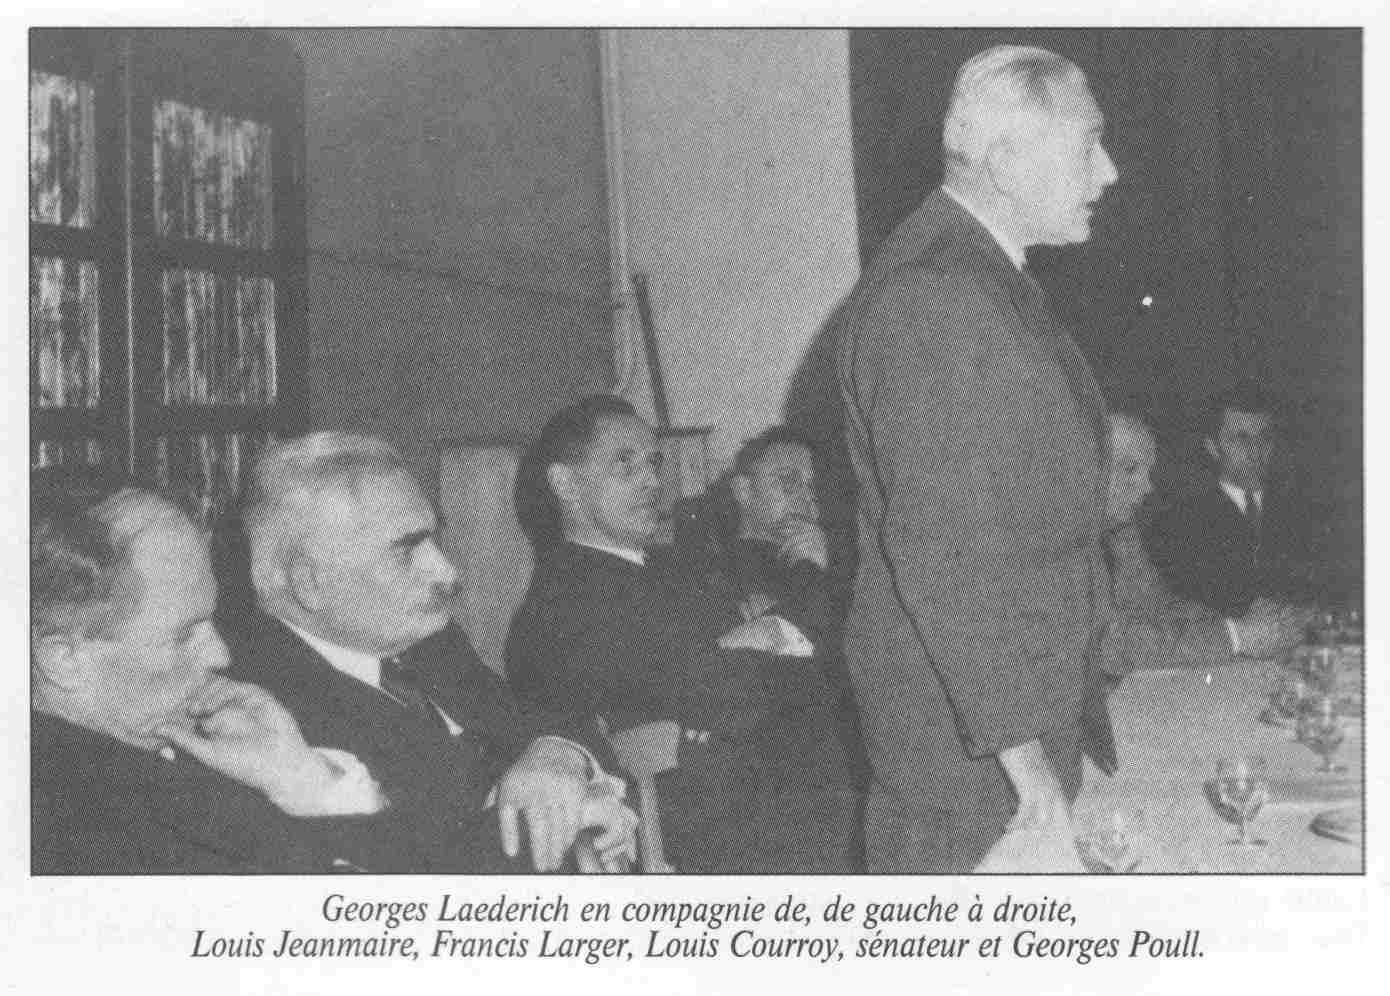 Georges Laederich en compagnie de, de gauche  droite : Louis Jeanmaire, Francis Larger, Louis Courroy, snateur, et Georges Poull.